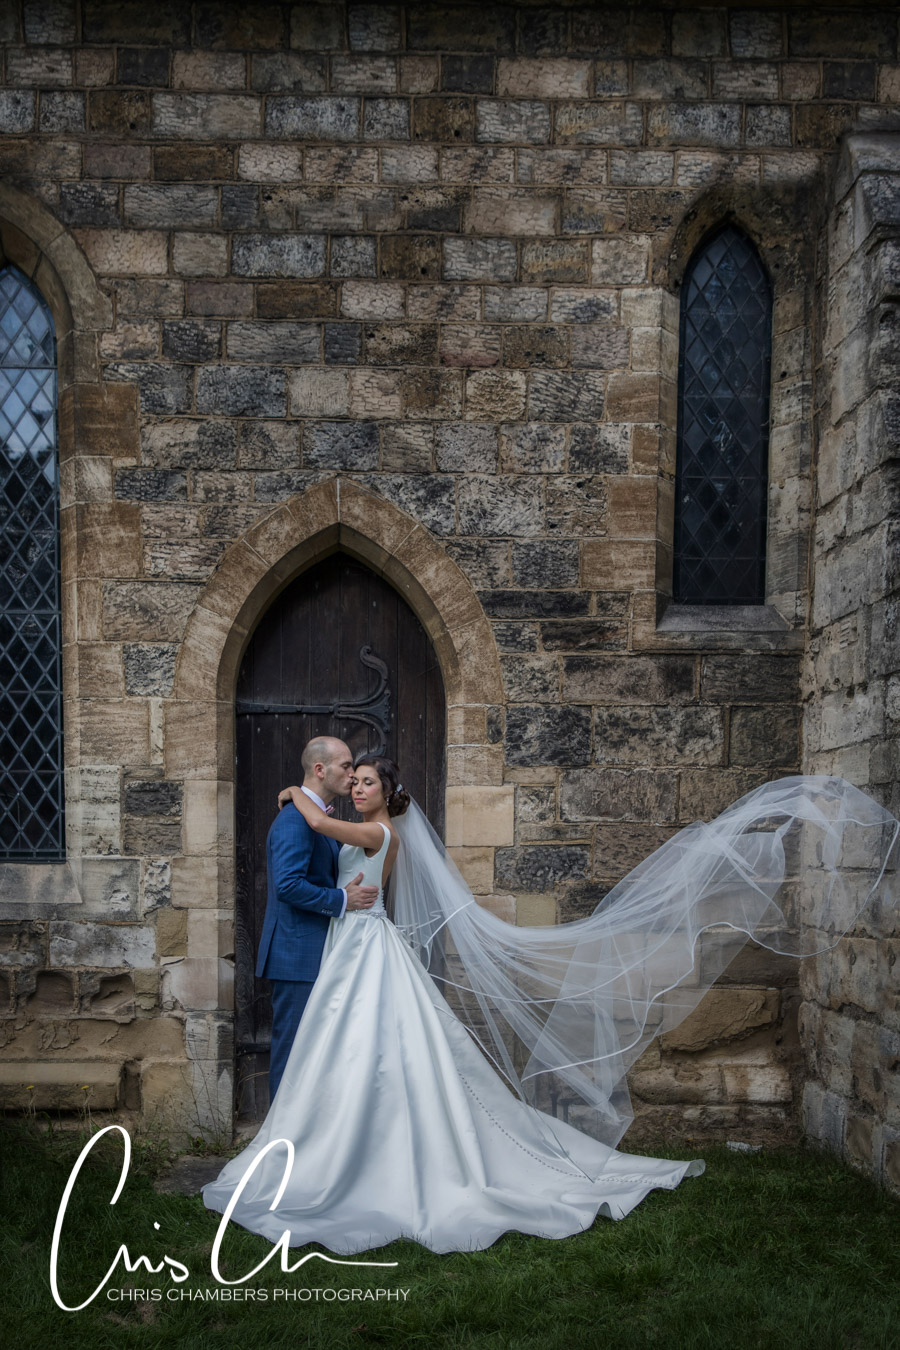 Leeds wedding photographer, Yorkshire wedding photography, marquee weddings, Chris Chambers Photography